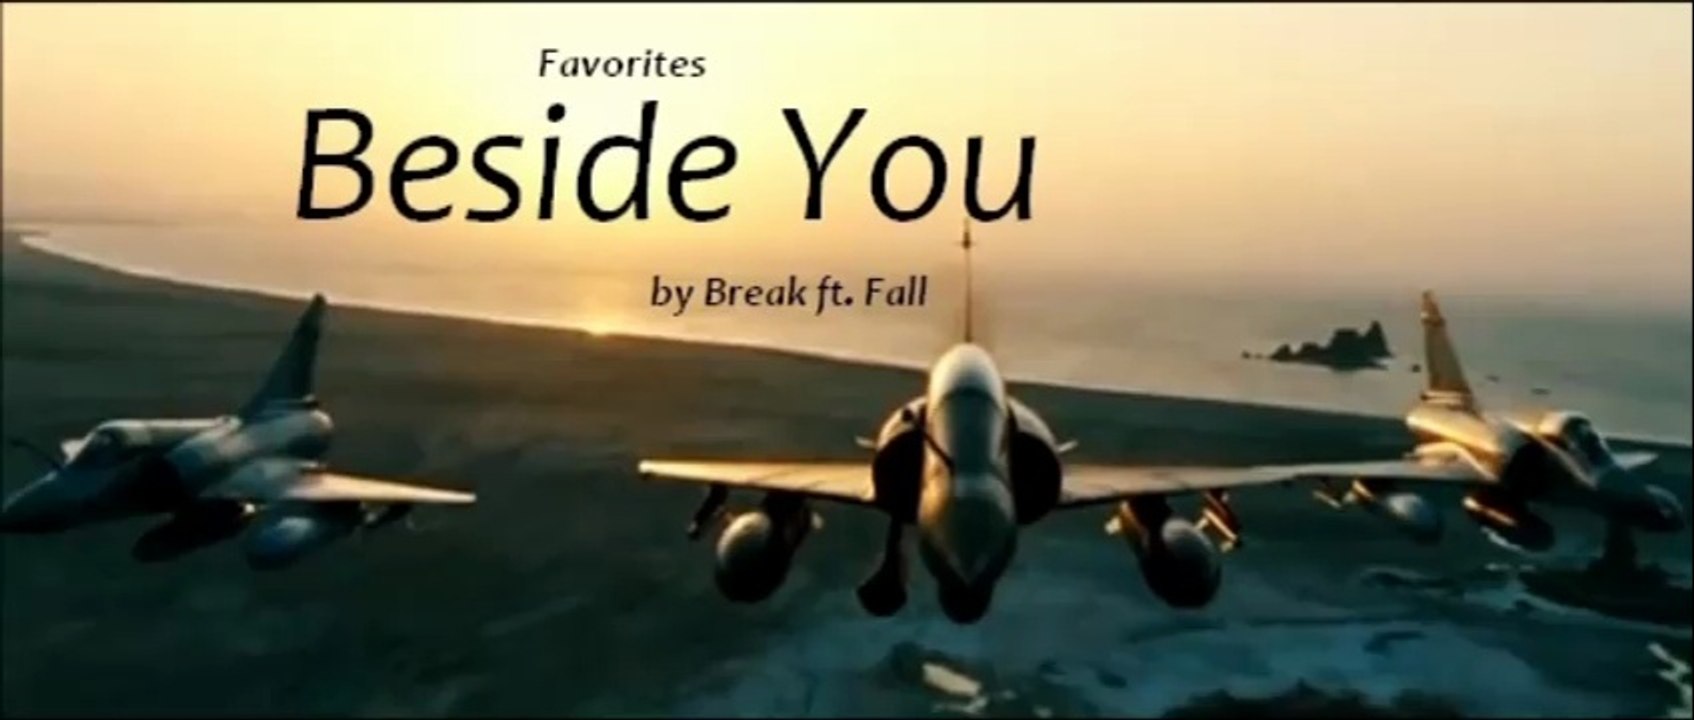 Beside You by Break Ft. Fall (Favorites)